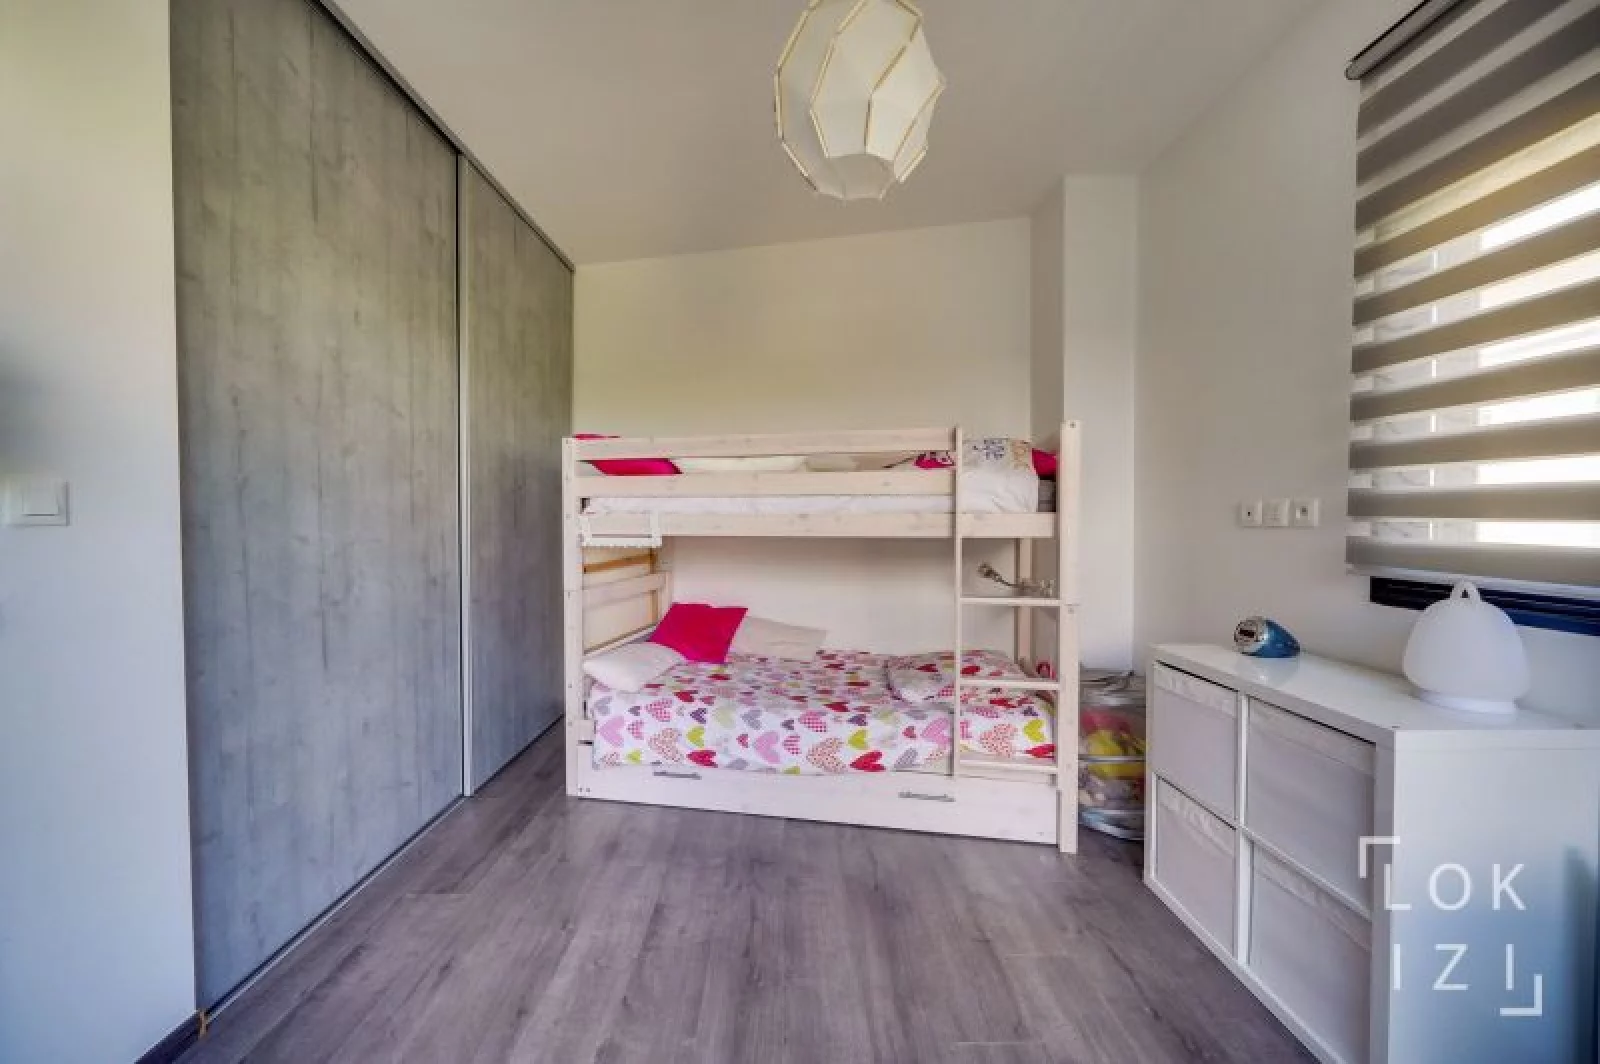 Location appartement T5bis loft meublé 135m² (Bordeaux ouest / Mérignac) 